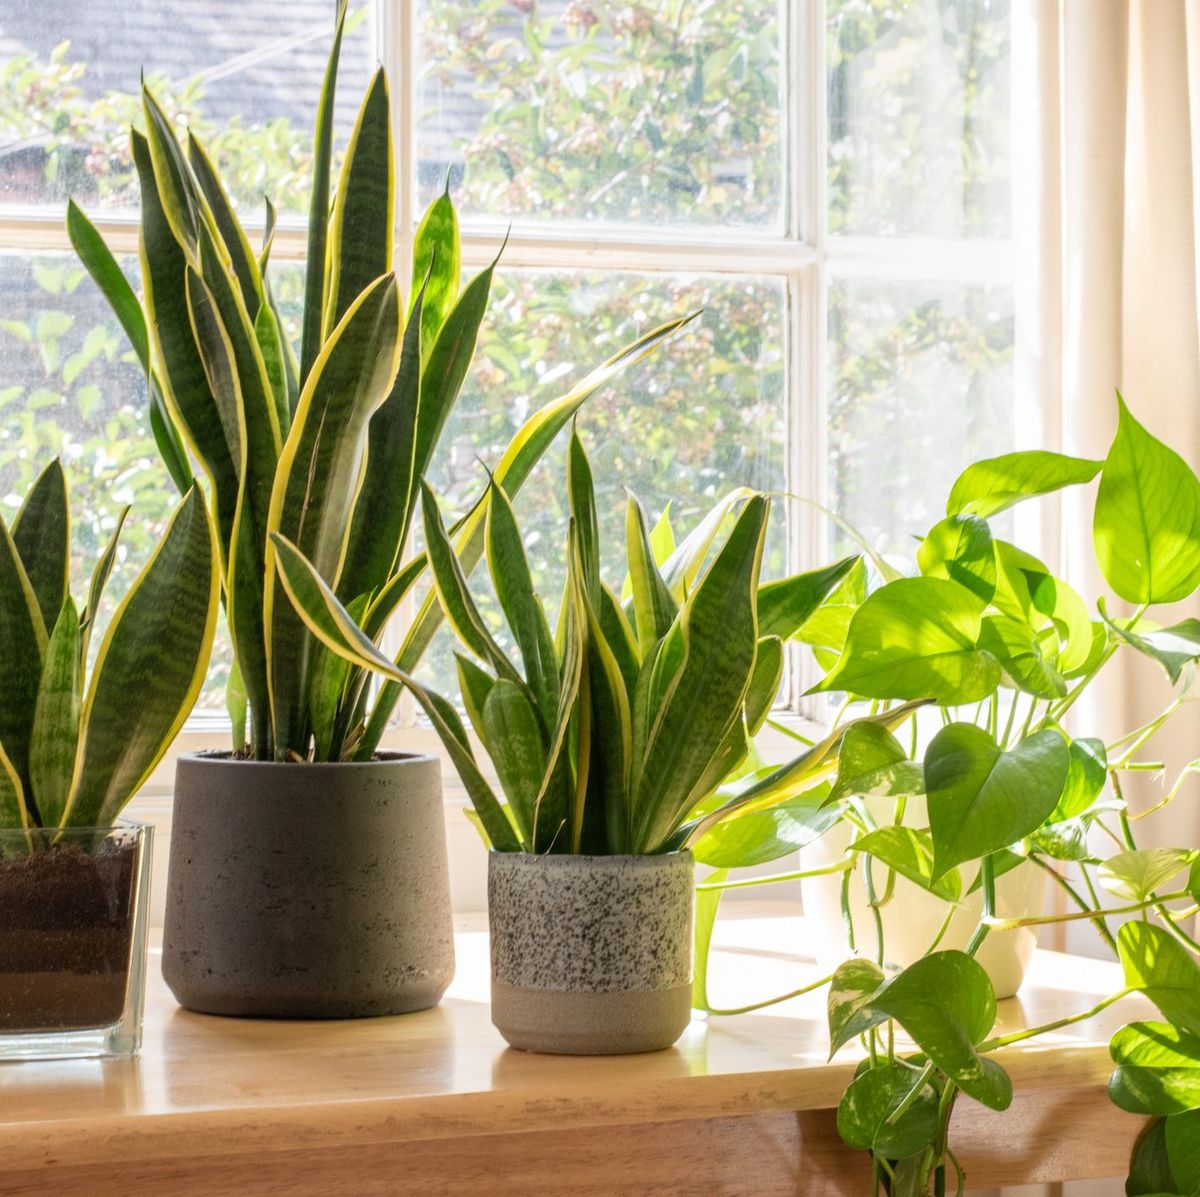 vier keer Moet ding 15 Common Houseplants to Grow - Best Indoor Plants